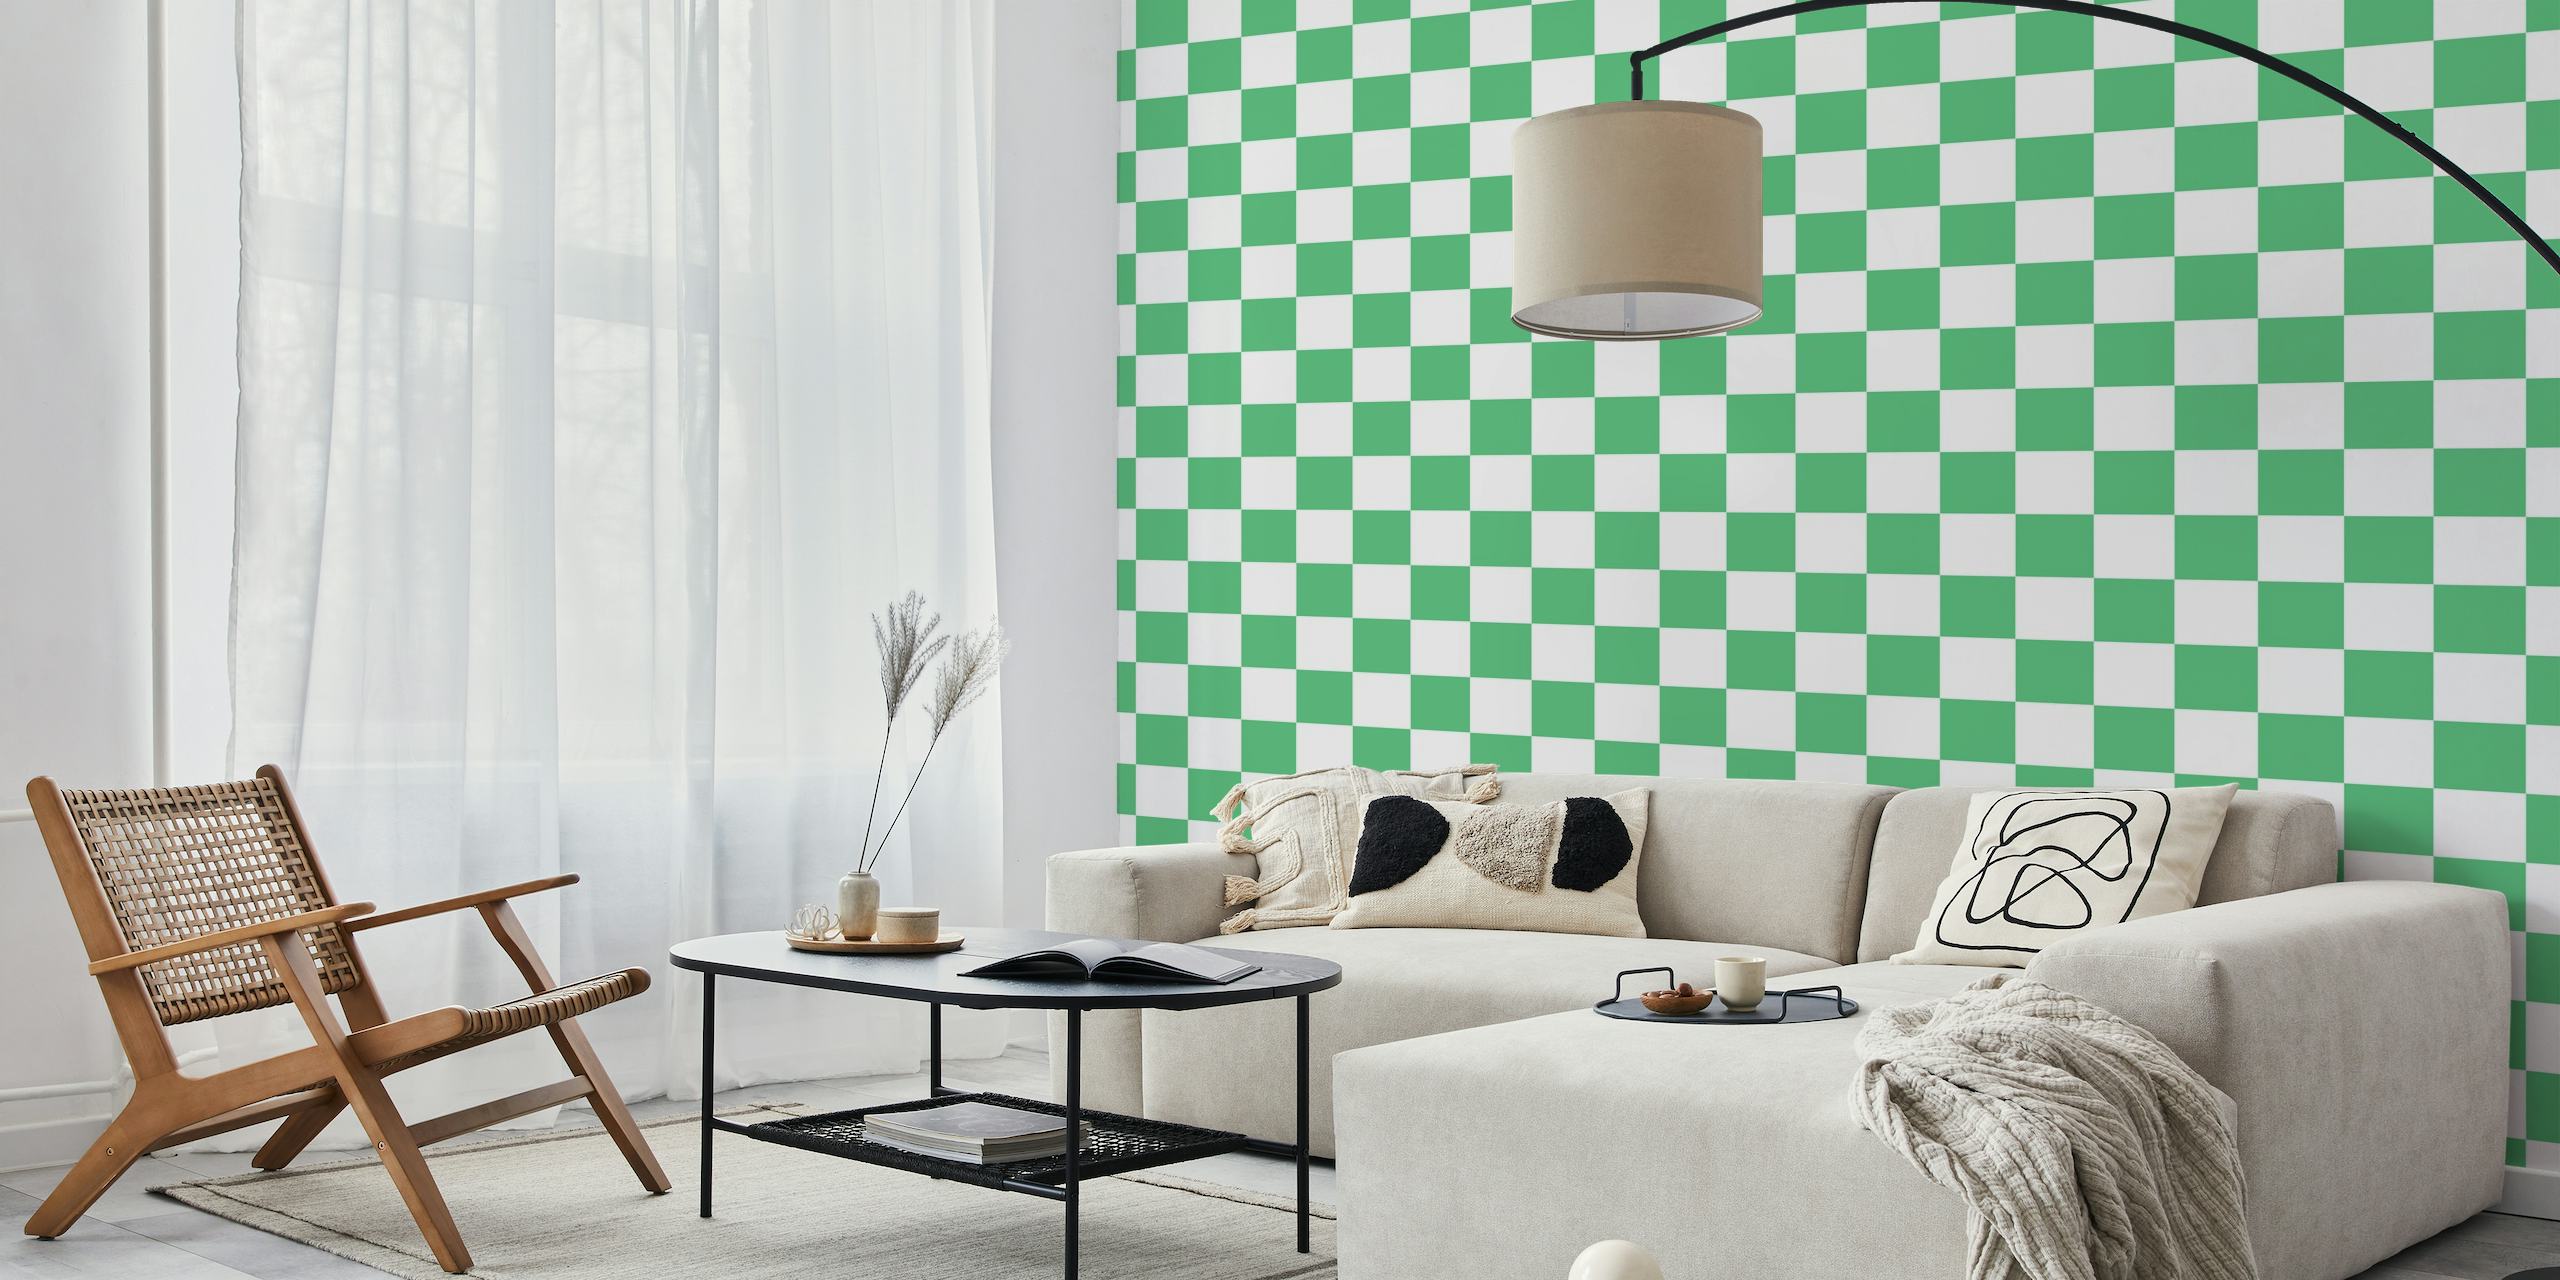 Zidna slika s velikim šahovskim uzorkom u mint zelenoj i bijeloj boji